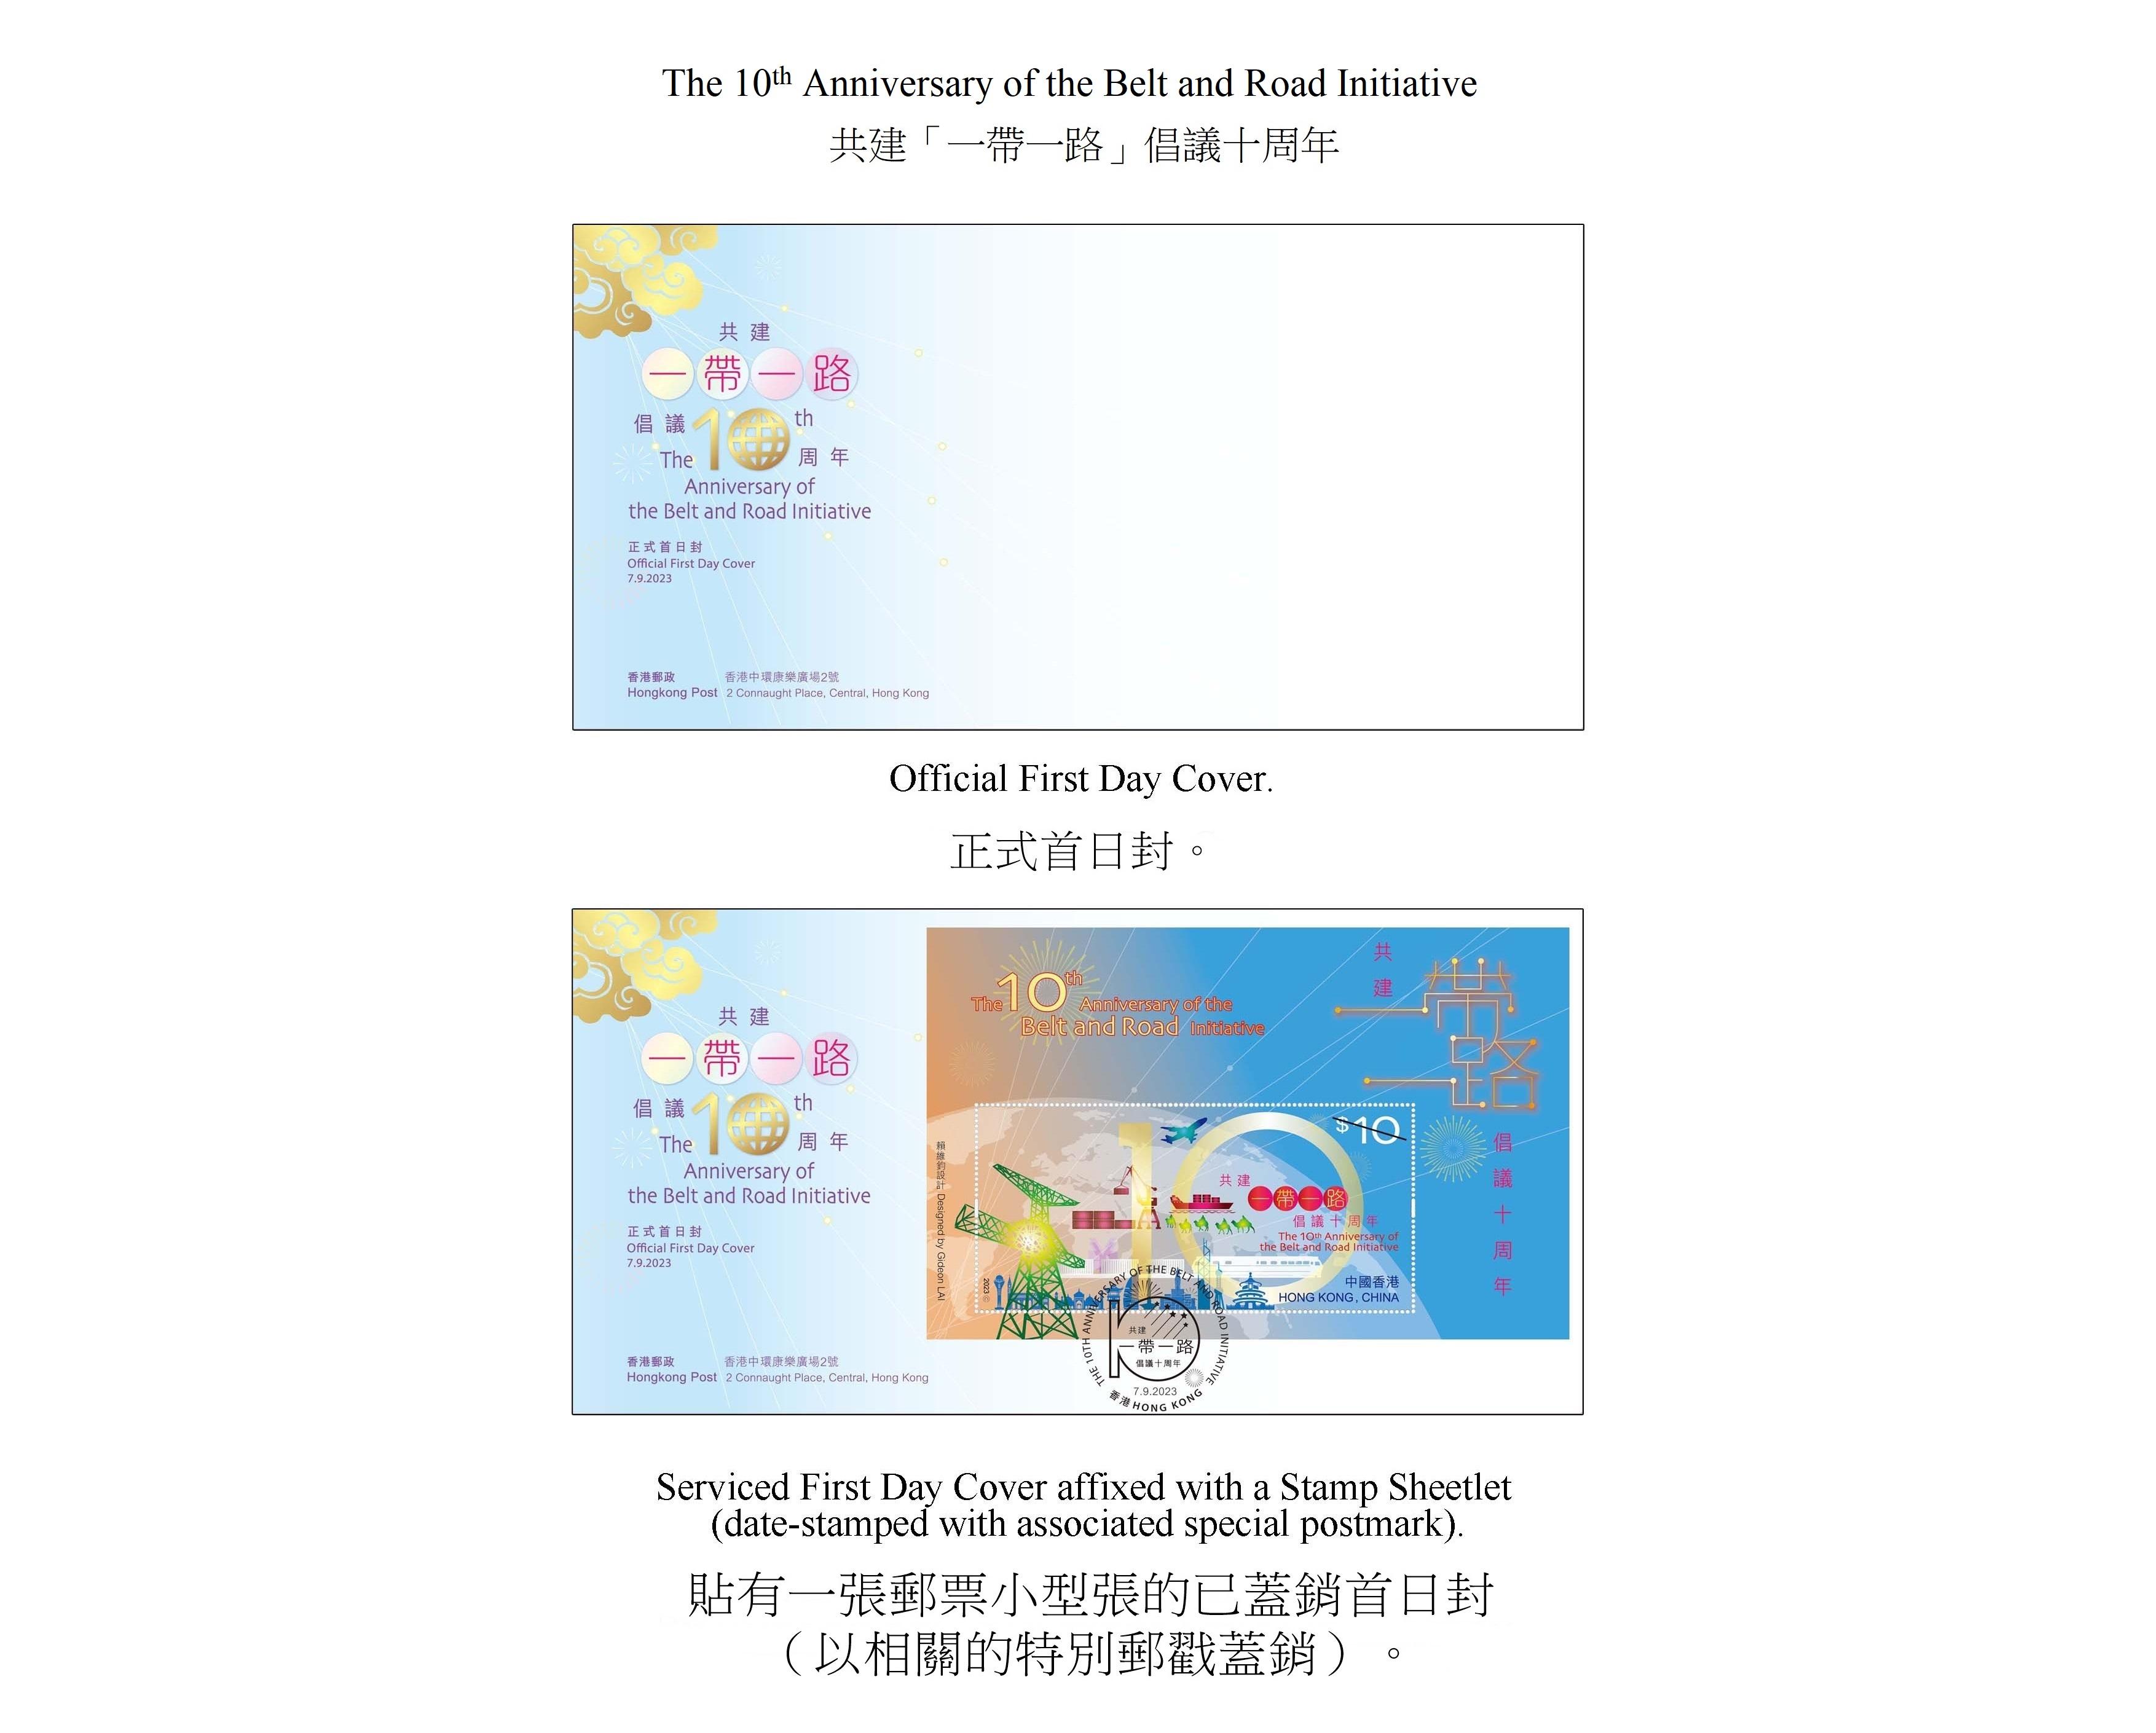 香港郵政九月七日（星期四）發行以「共建『一帶一路』倡議十周年」為題的特別郵票及相關集郵品。圖示首日封。